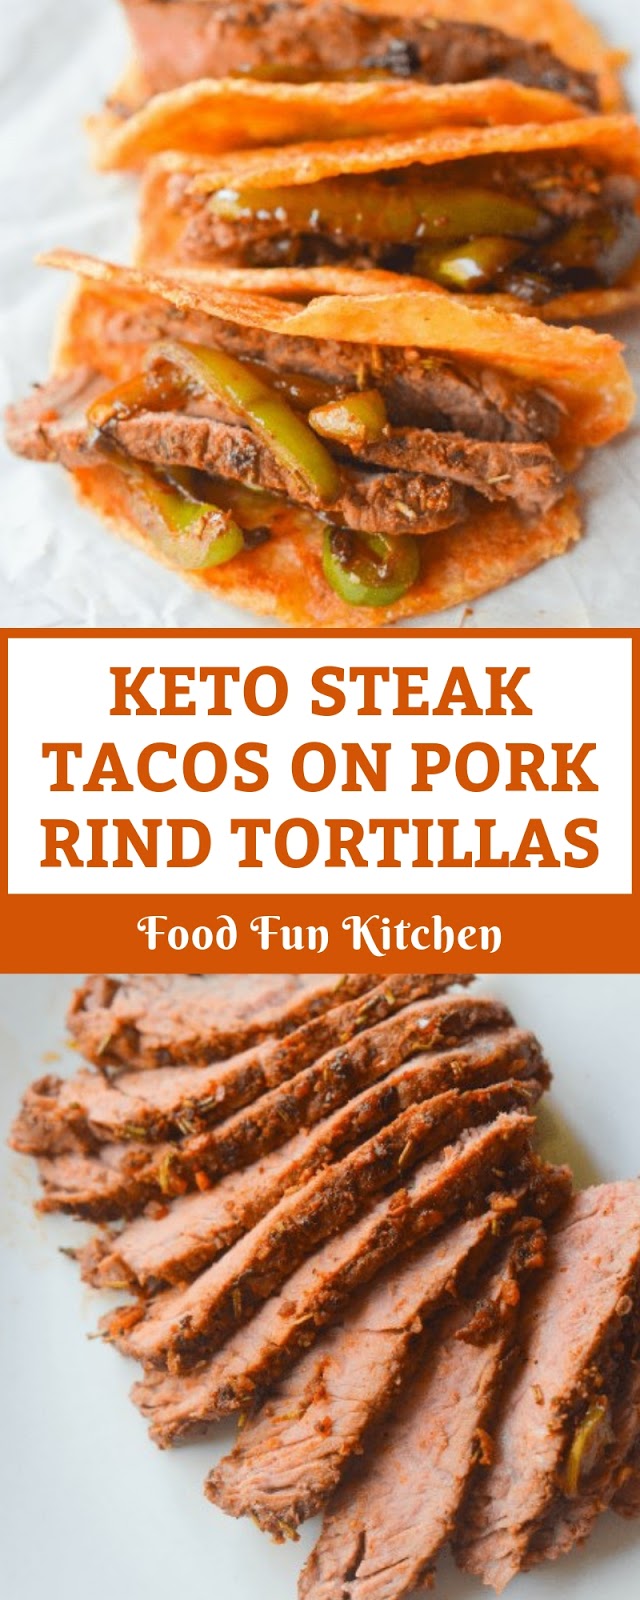 KETO STEAK TACOS ON PORK RIND TORTILLAS